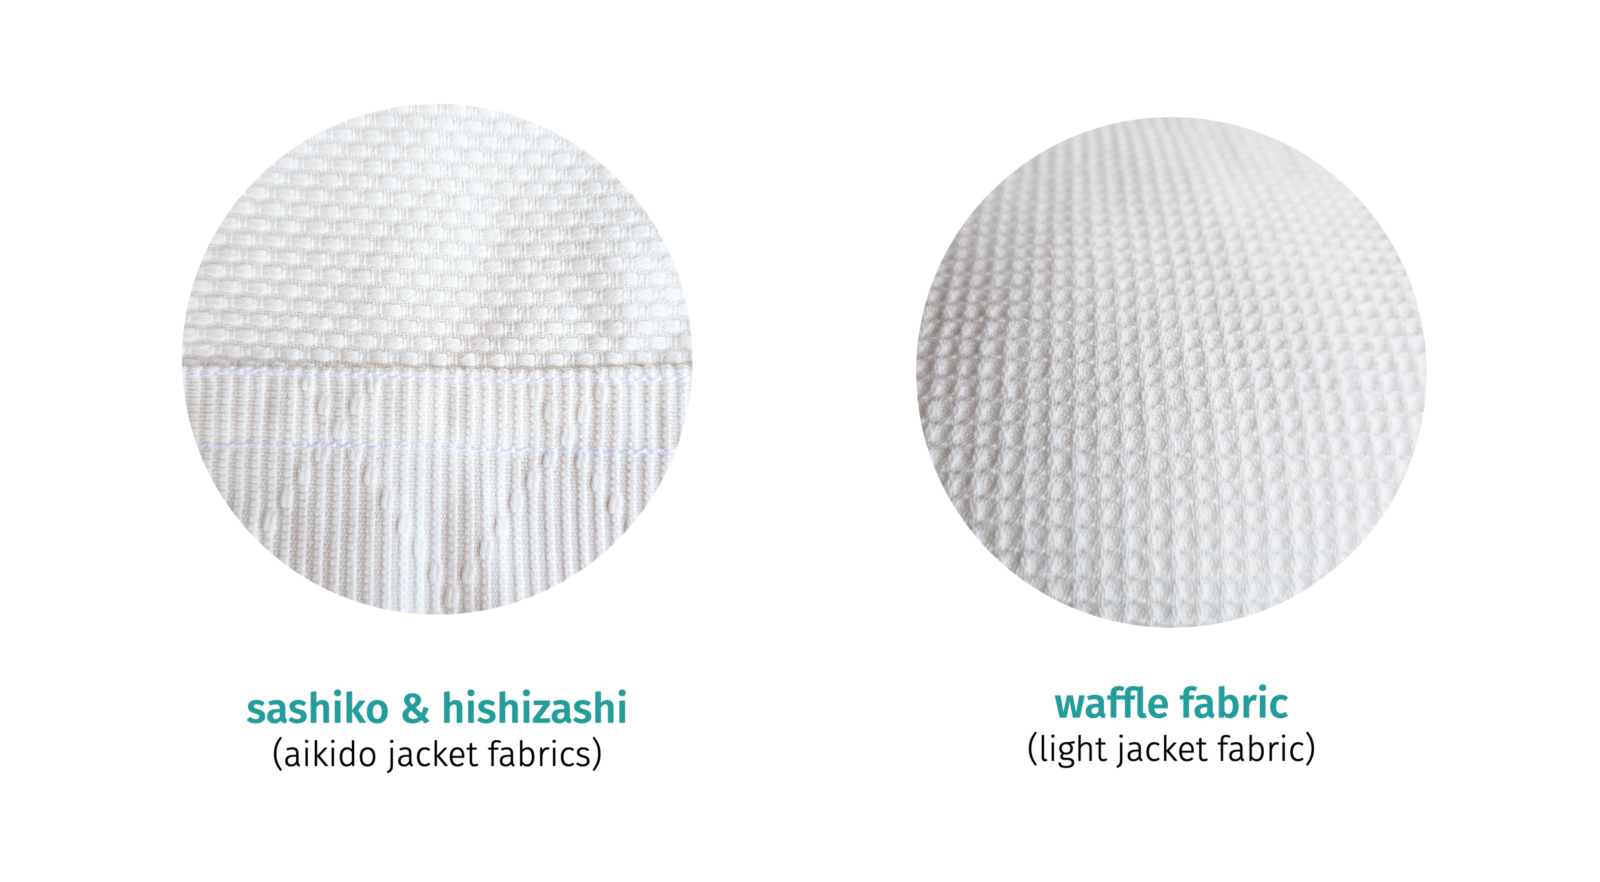 sashiko, hishizashi and waffle fabrics